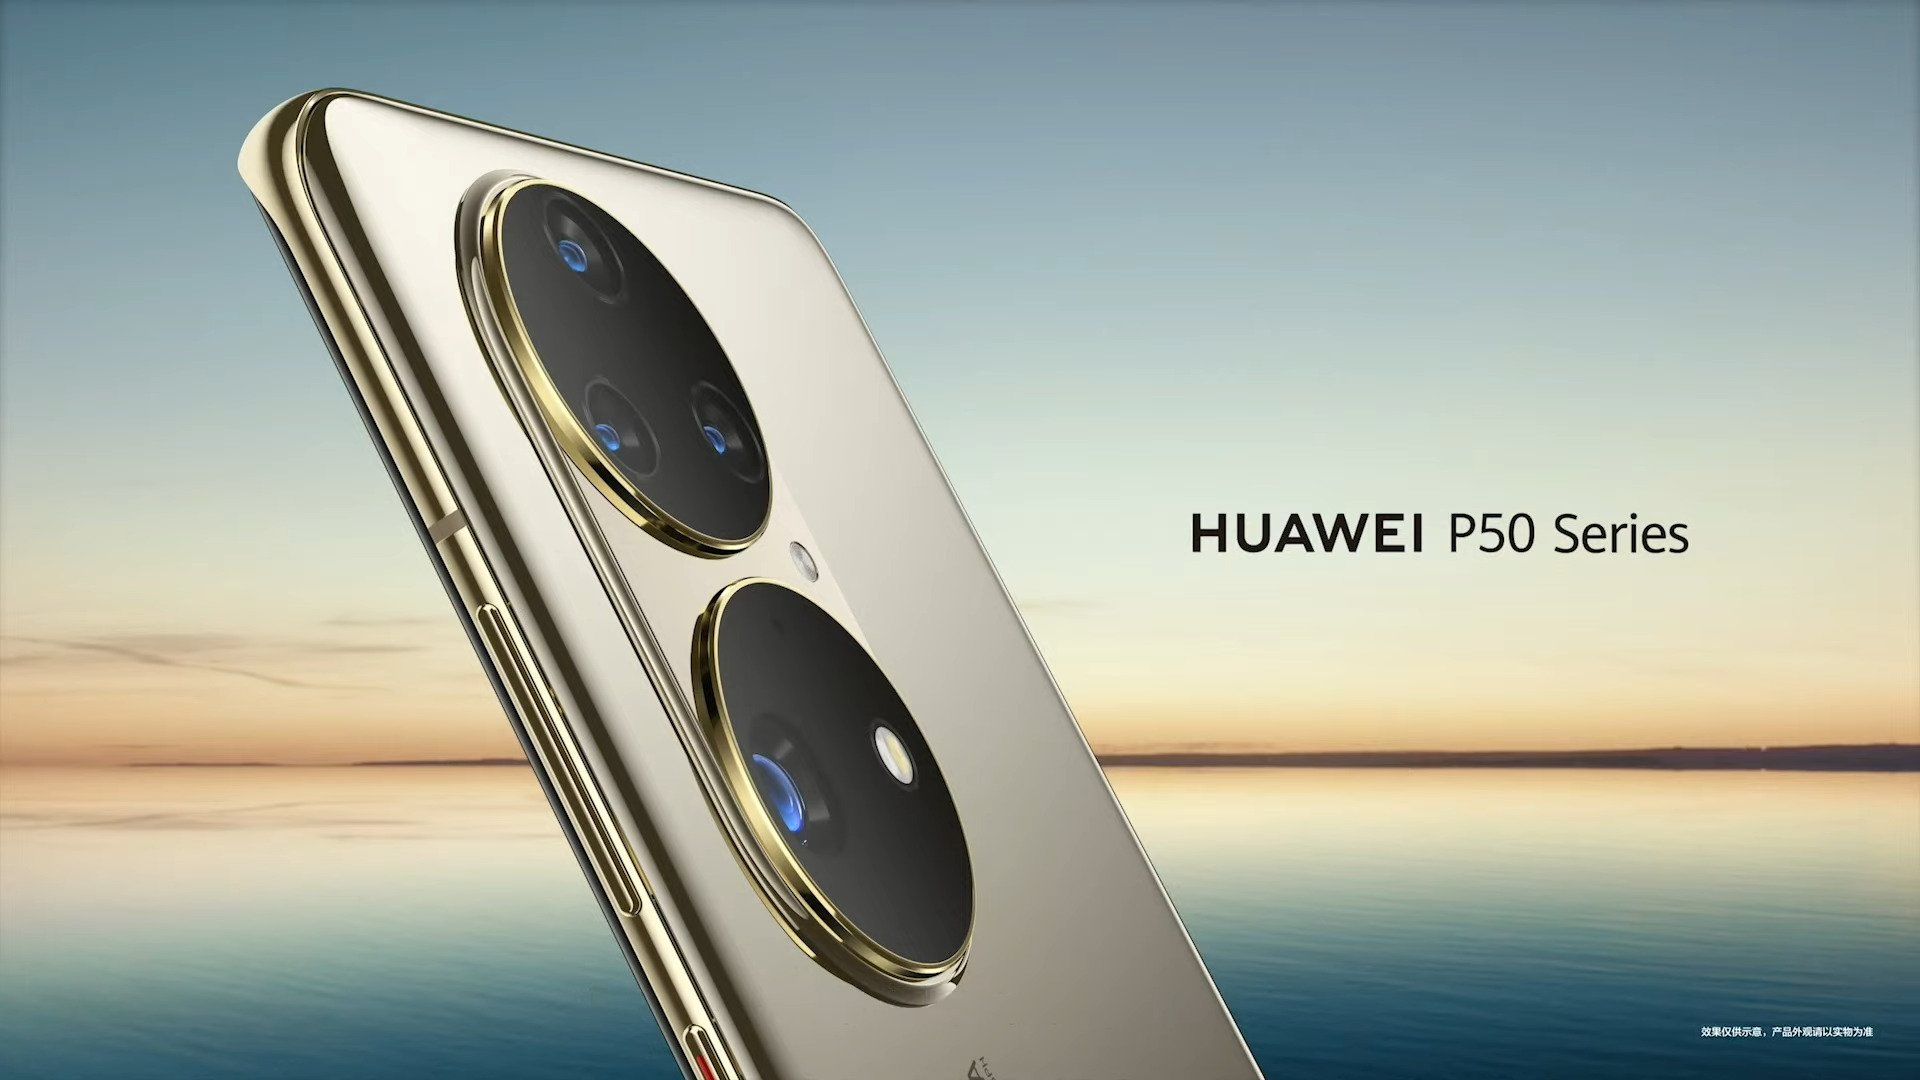 هواوي Huawei P50